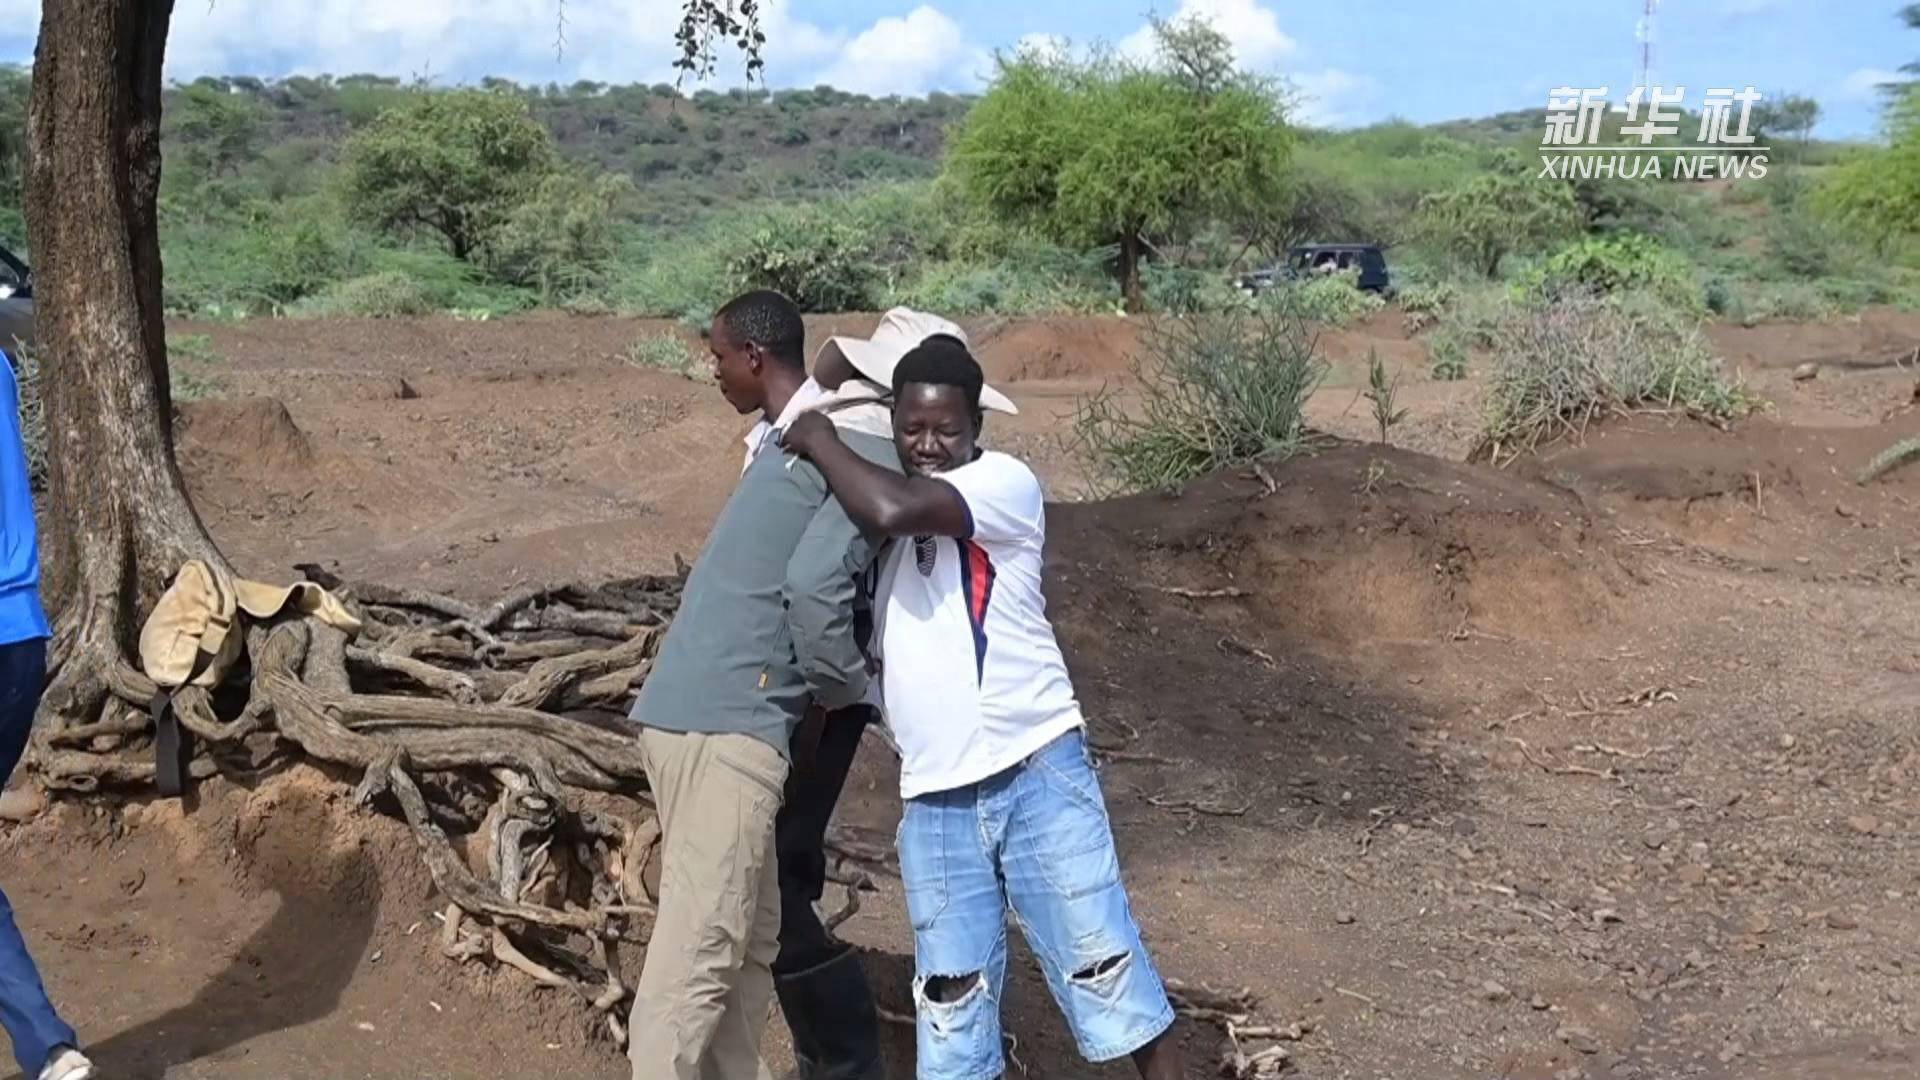 “肯尼亚”中肯联合考古项目获重要新发现肯专家期望开展更多领域合作